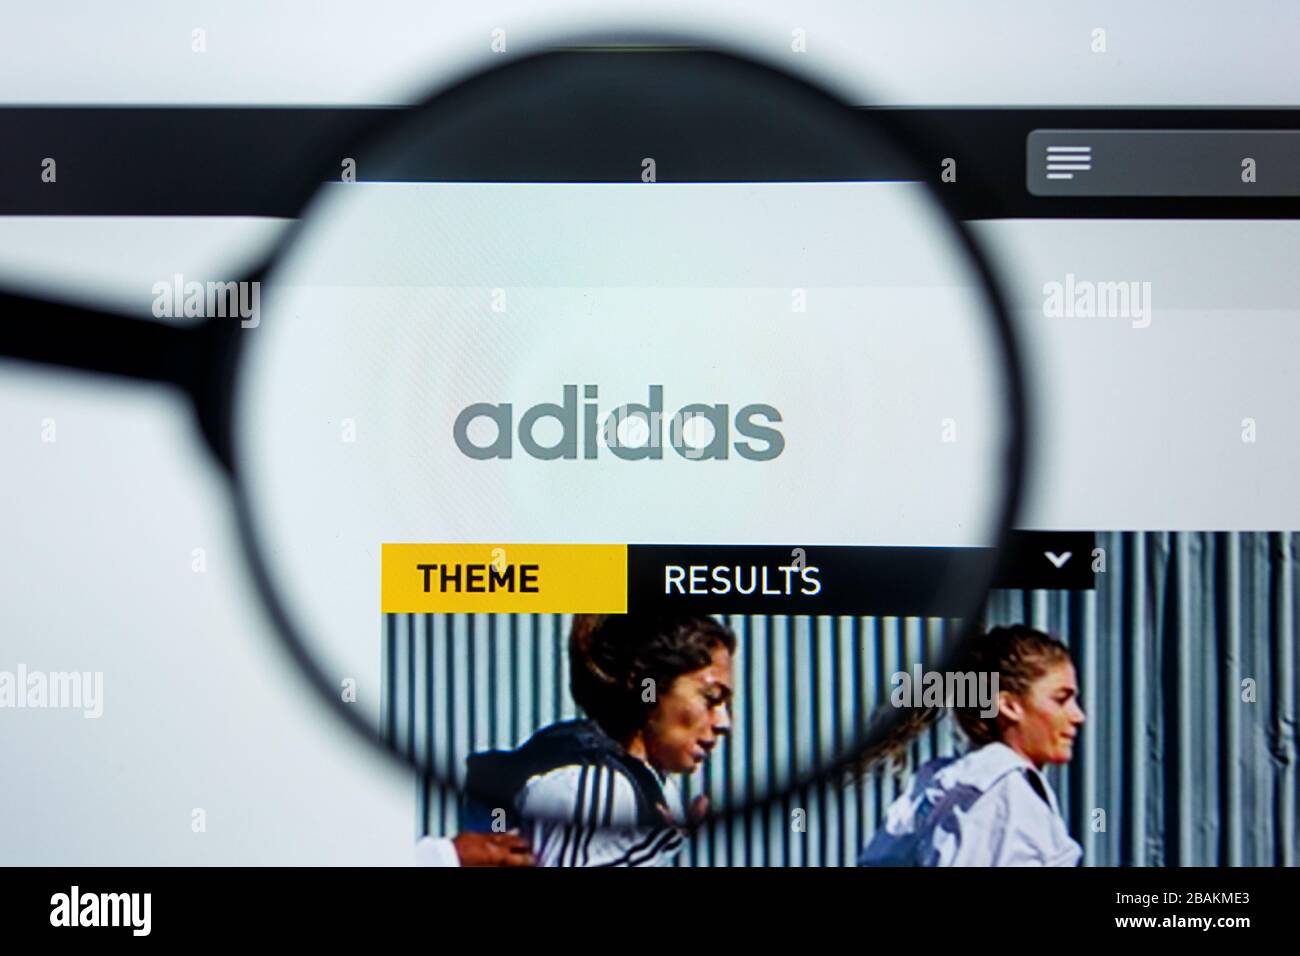 Insatisfactorio estoy de acuerdo con Dibuja una imagen Los Angeles, California, EE.UU. - 12 Junio 2019: Editorial ilustrativa de  la página web de Adidas. Logotipo de adidas visible en la pantalla  Fotografía de stock - Alamy